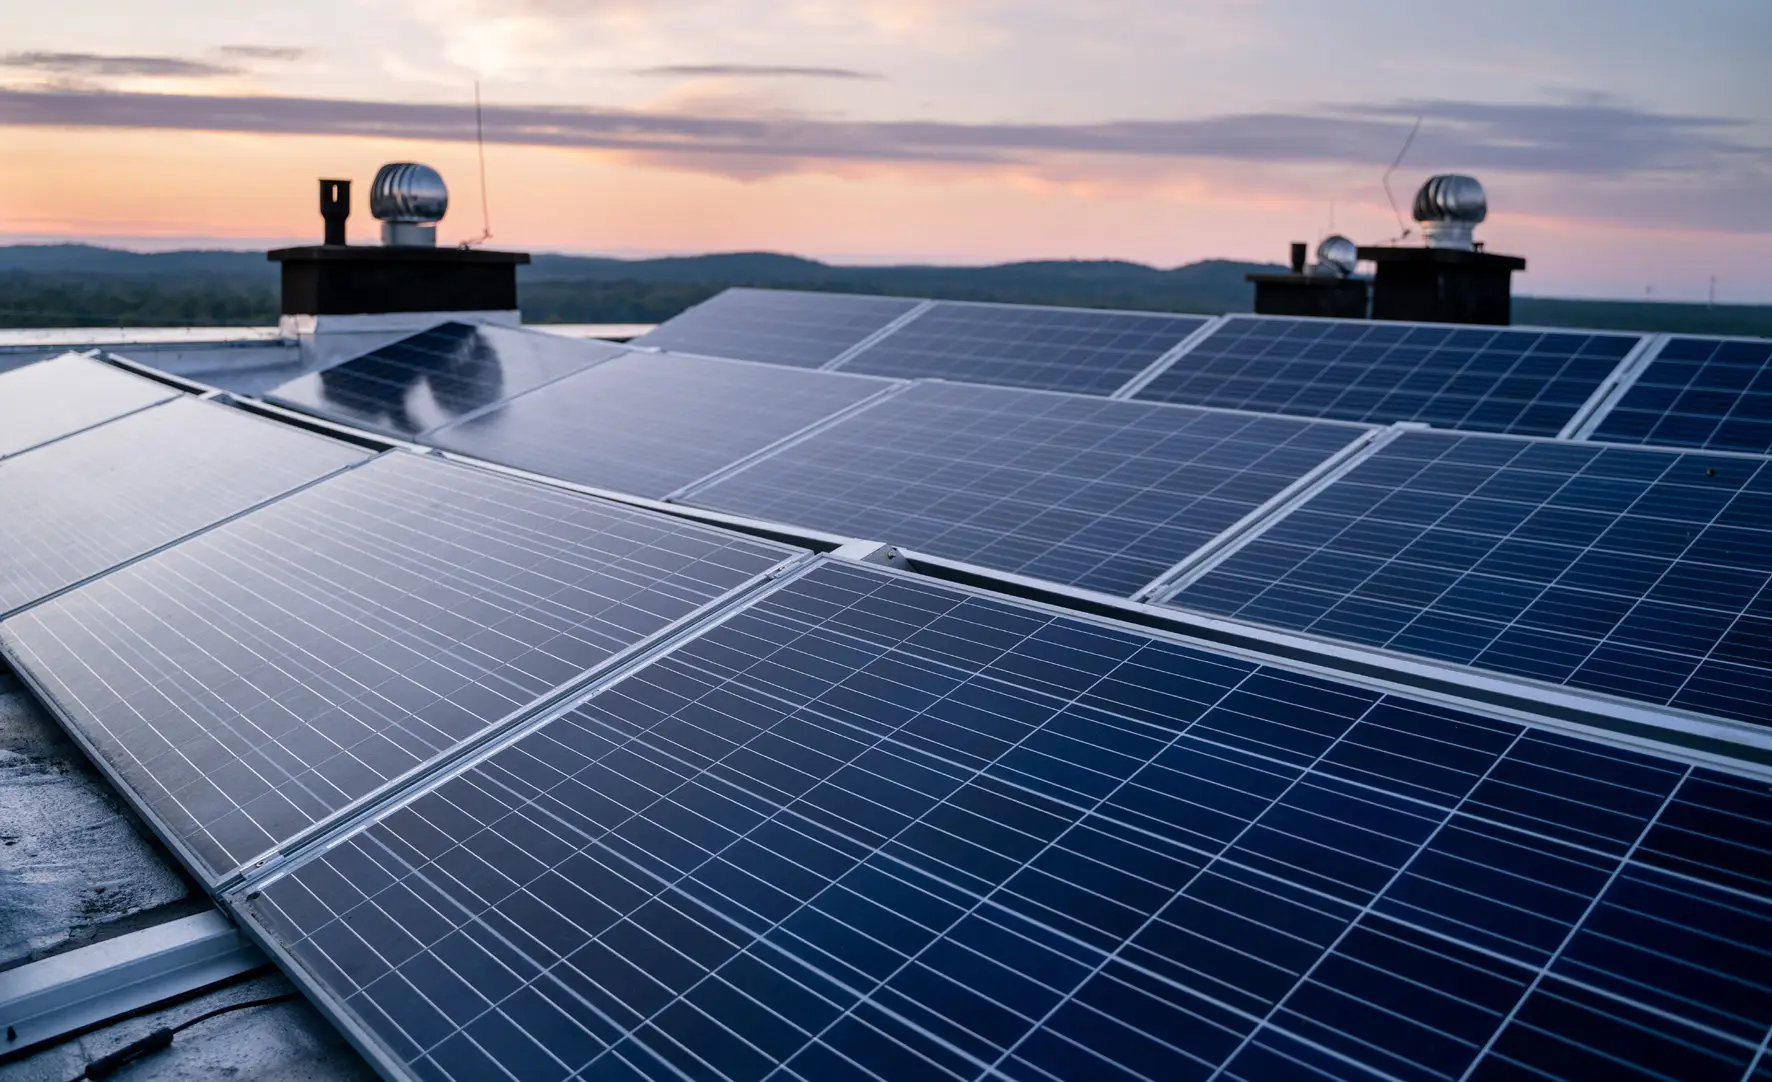 Sunopee est votre partenaire en transition énergétique, spécialisé en énergies renouvelables et solutions photovoltaïques